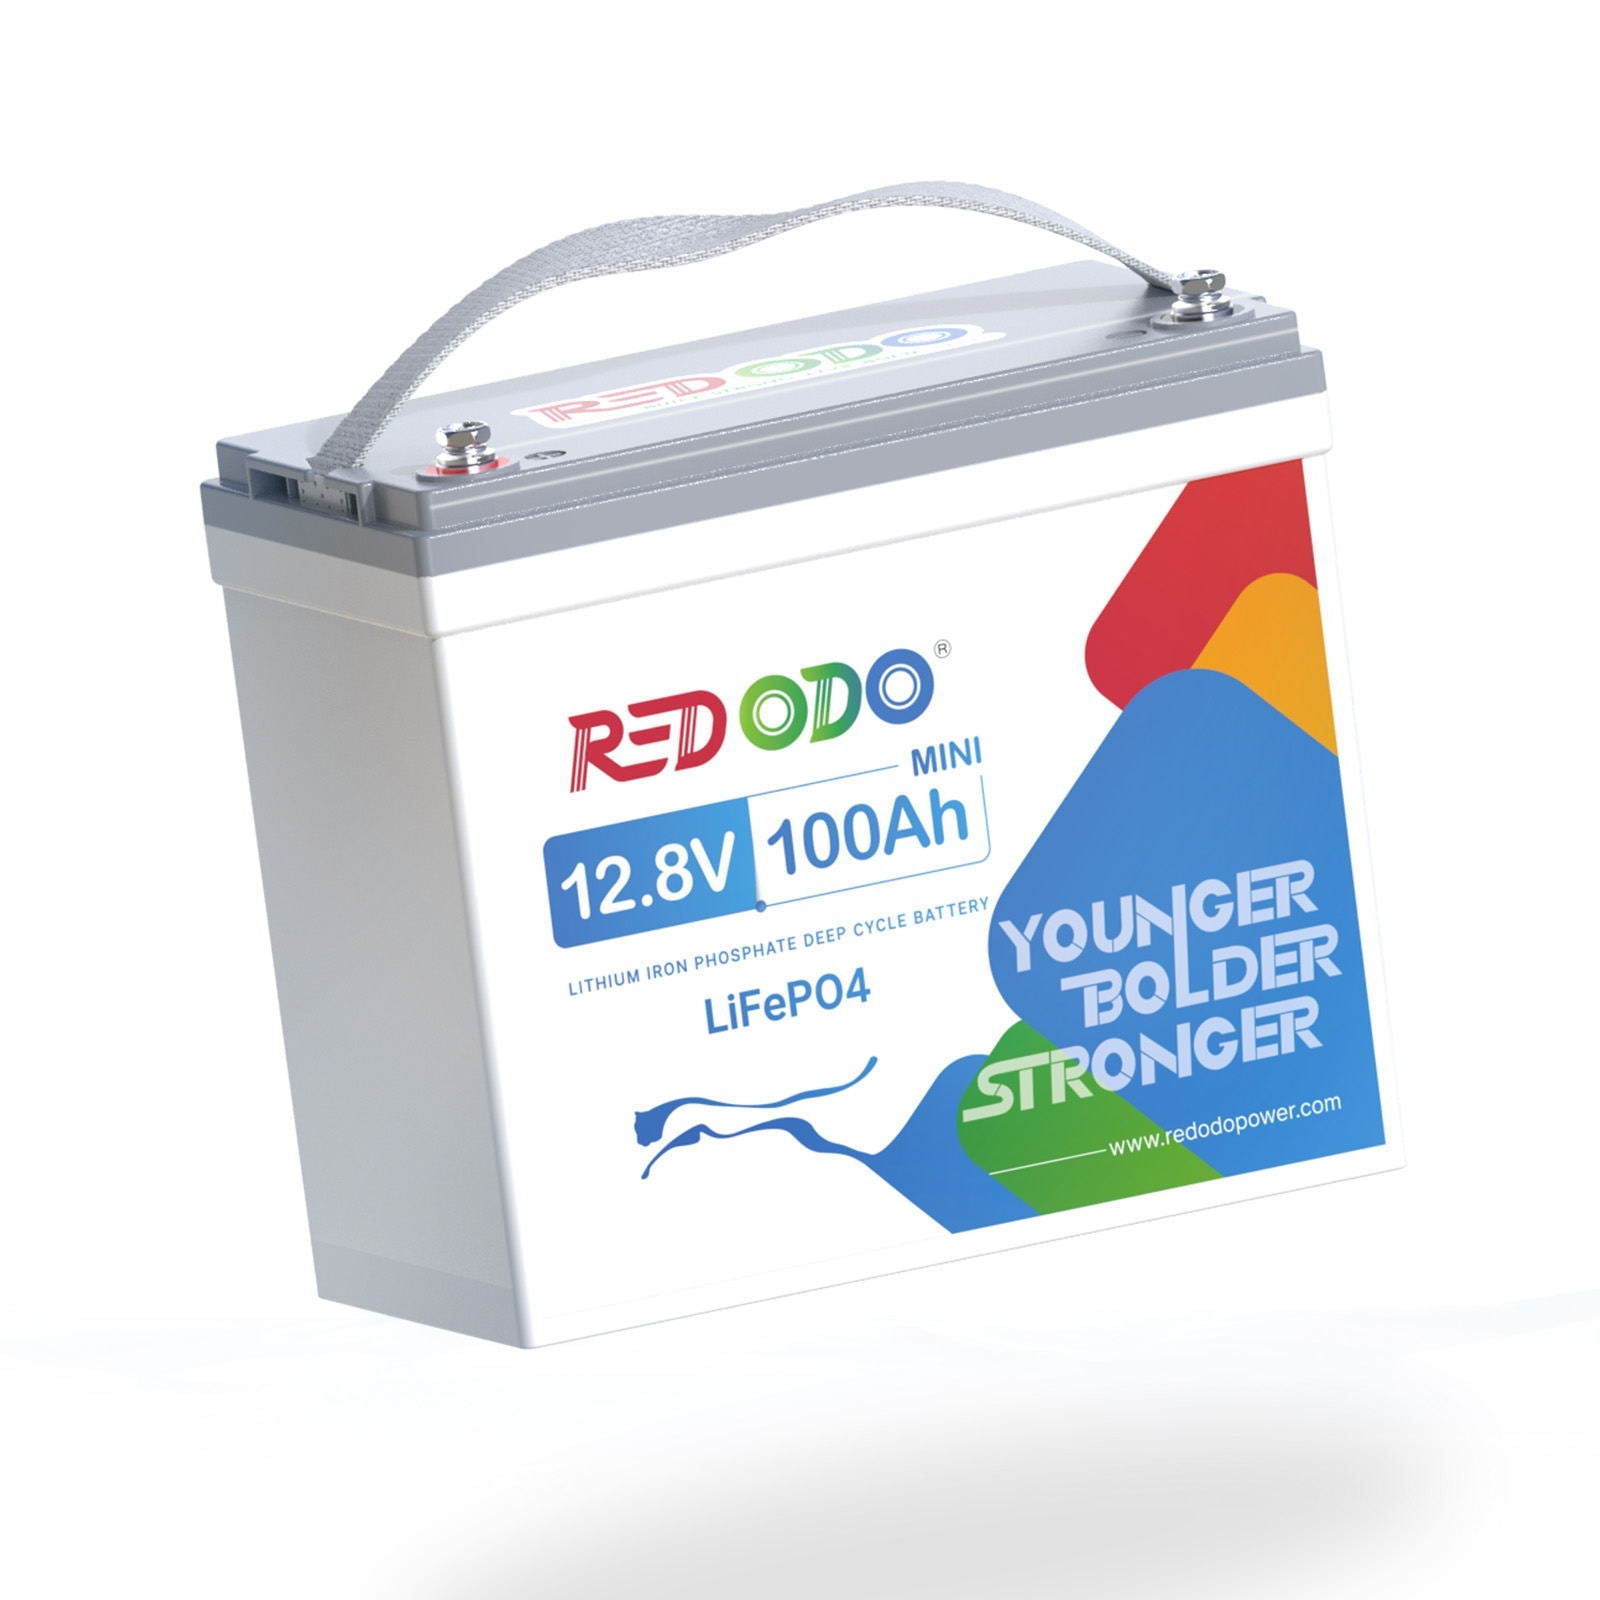 【NEW】Befreiung von 19% MwSt - Redodo 12V 100Ah Mini LiFePO4 Batterie - nur für Wohngebäude und Deutschland